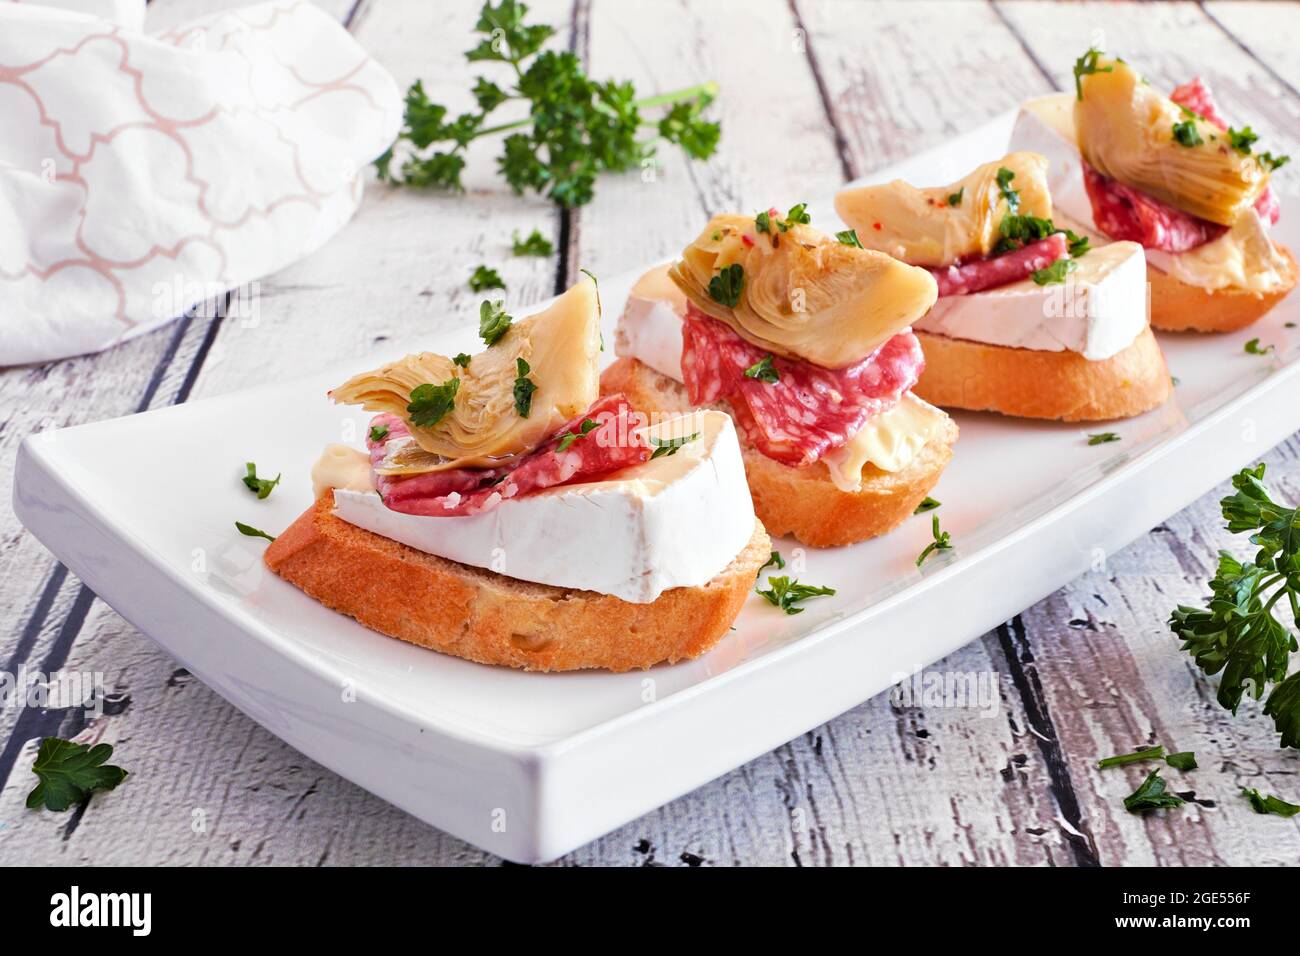 Crostini-Vorspeisen mit Brie-Käse, Salami und Artischocken. Nahaufnahme auf einem Servierteller vor einem weißen Holzhintergrund. Party-Food-Konzept. Stockfoto